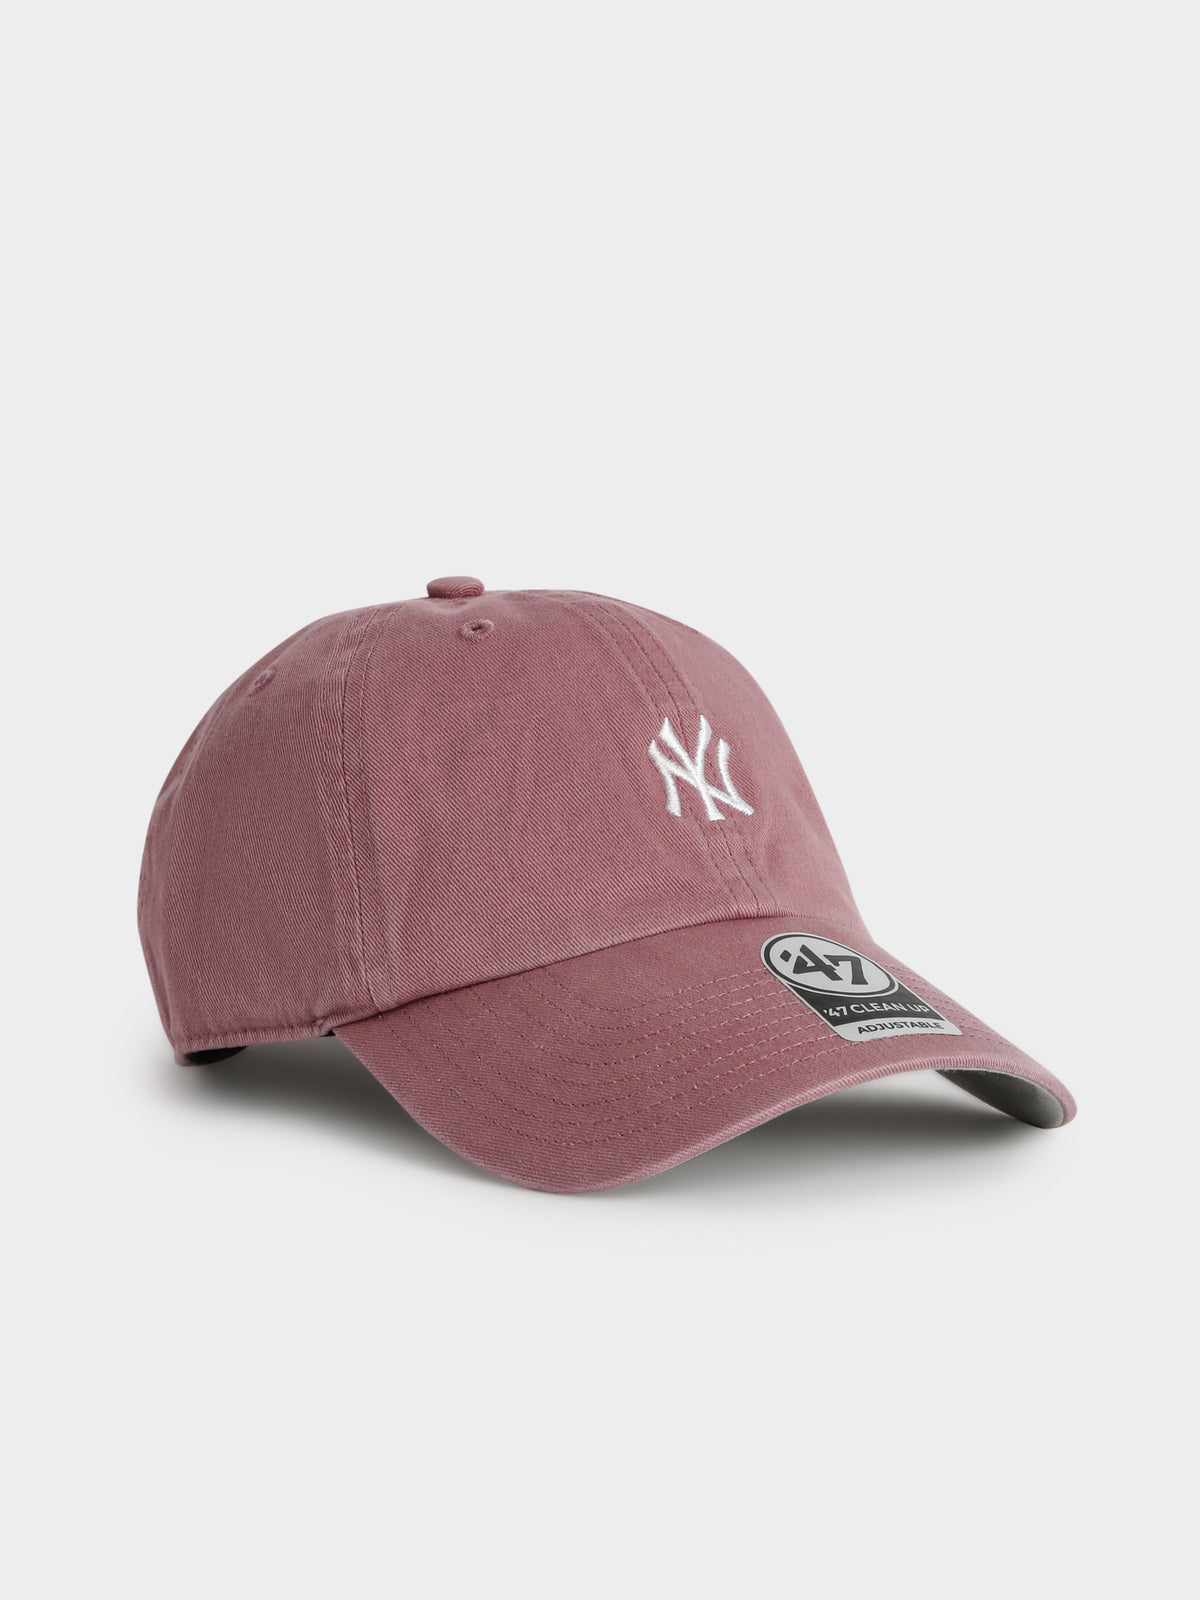 New York Yankees Cap in Mauve